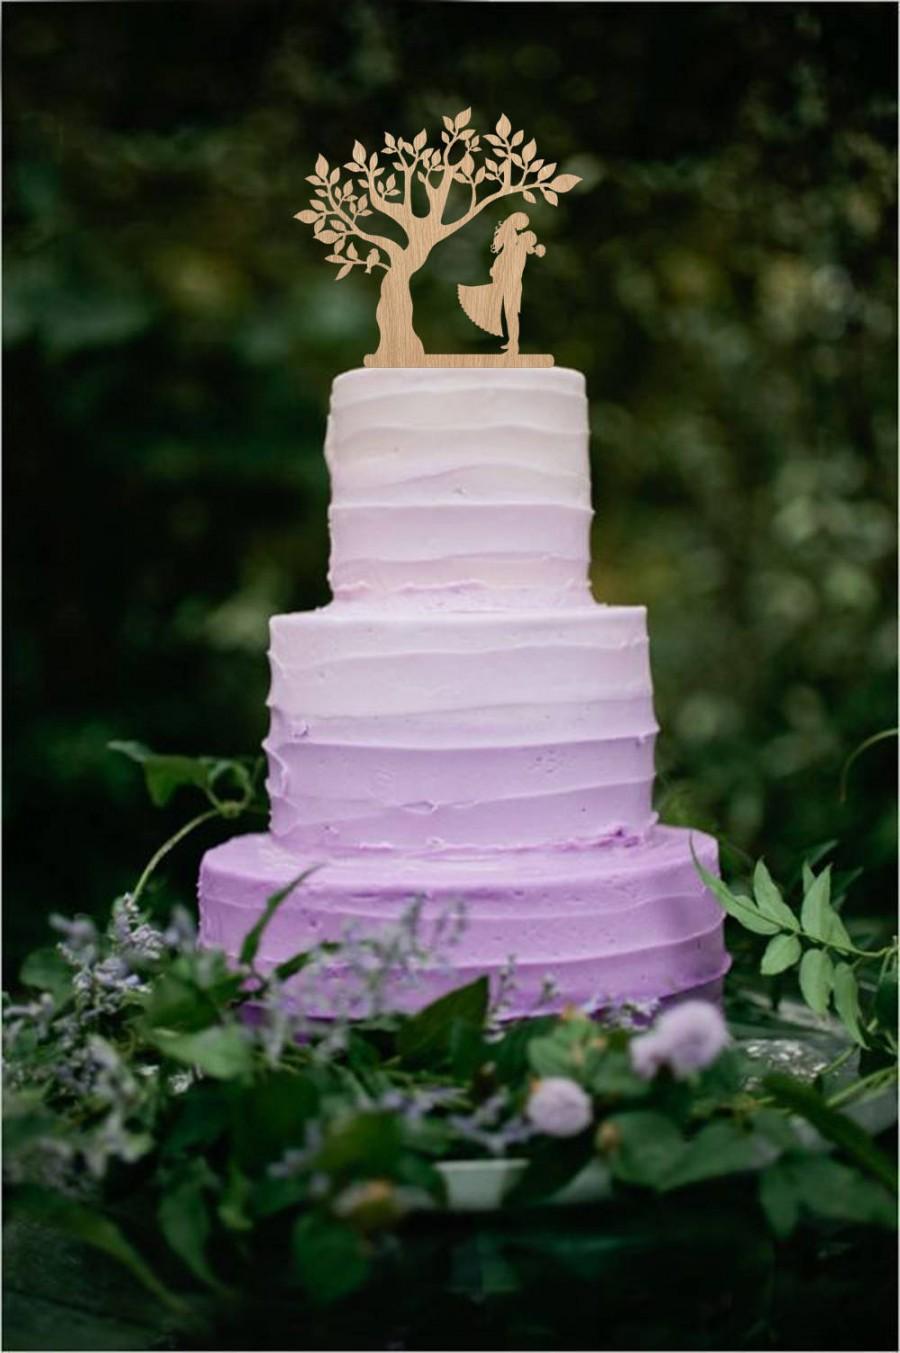 زفاف - Wedding Cake Topper Mr & Mrs Topper Silhouette Bride and Groom Wood Cake Topper Wedding Decor Rustic Cake Topper Wedding Topper Tree Unique